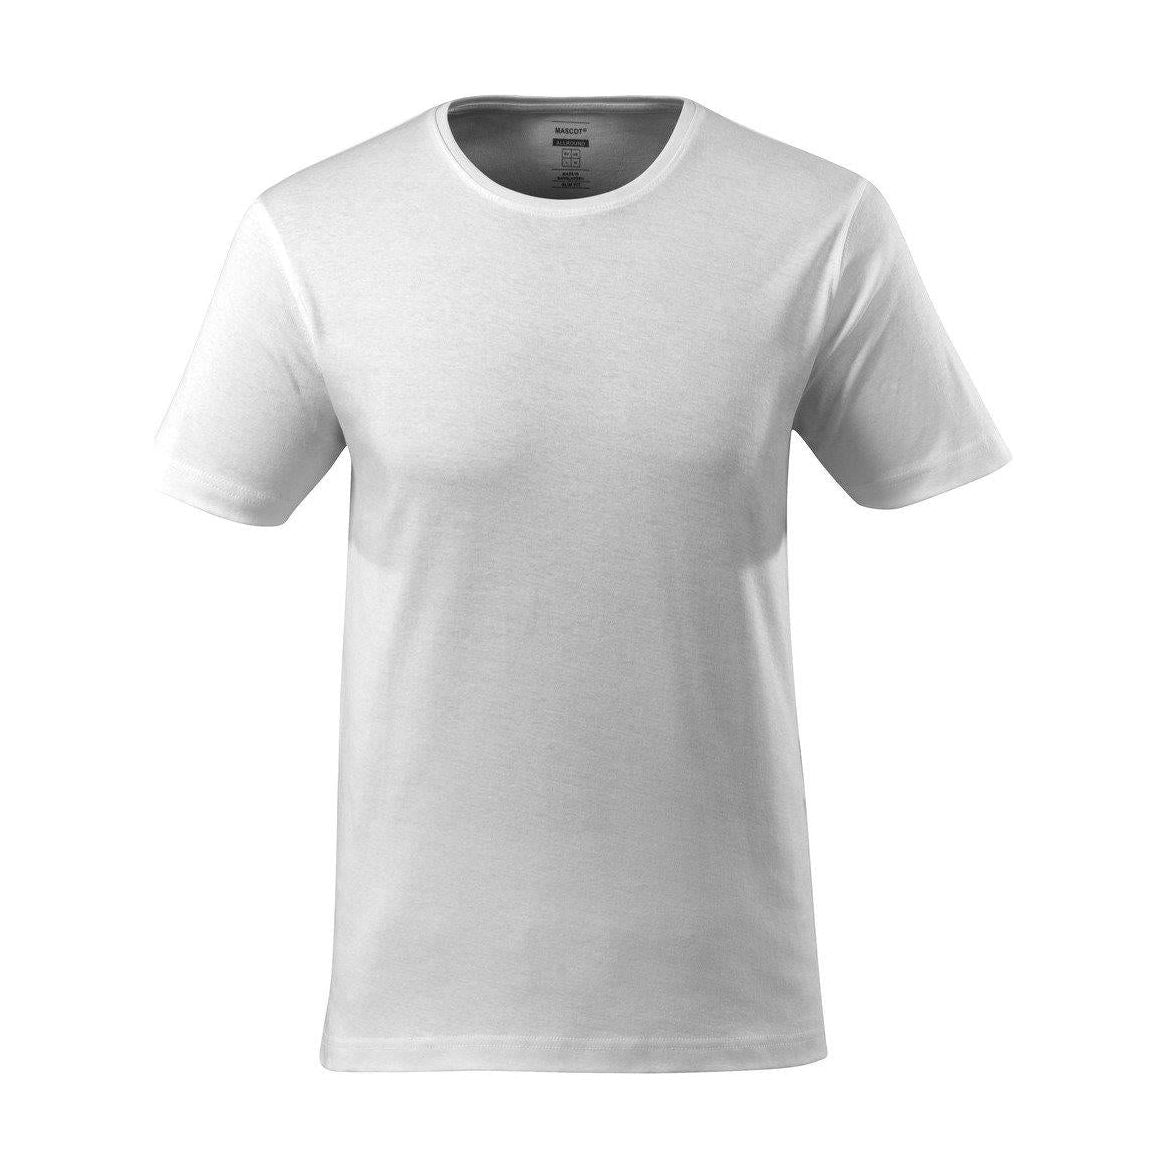 Mascot Vence T-shirt Slim-Fit White 51585-967-06 Front